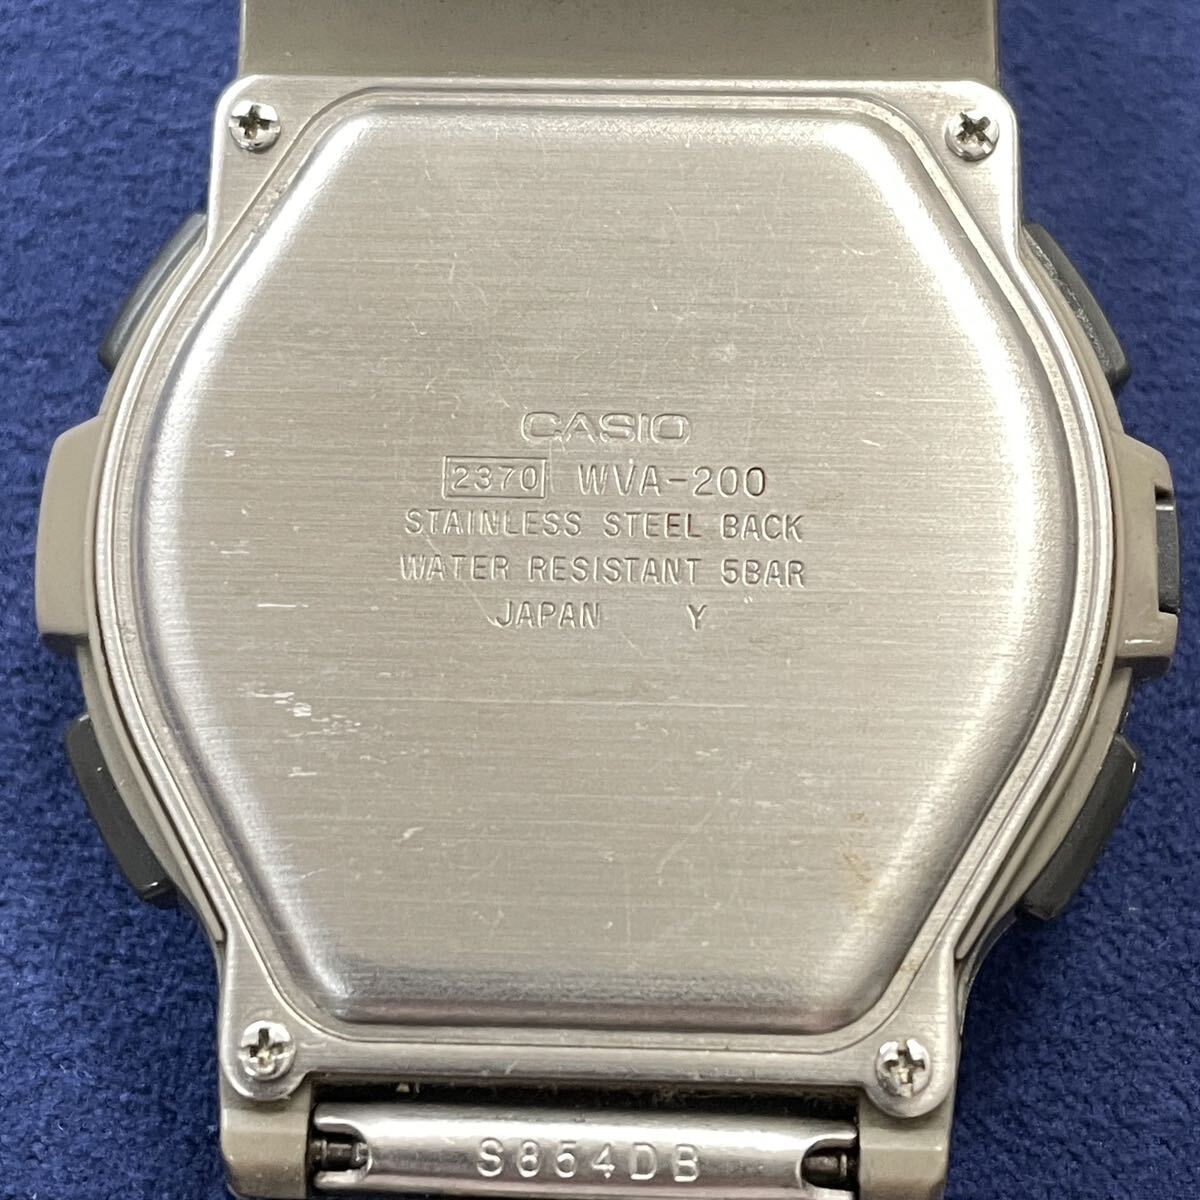  б/у мужские наручные часы CASIO WAVE CEPTOR Casio wave Scepter WVA-200 Digi-Ana кварц (4.14)